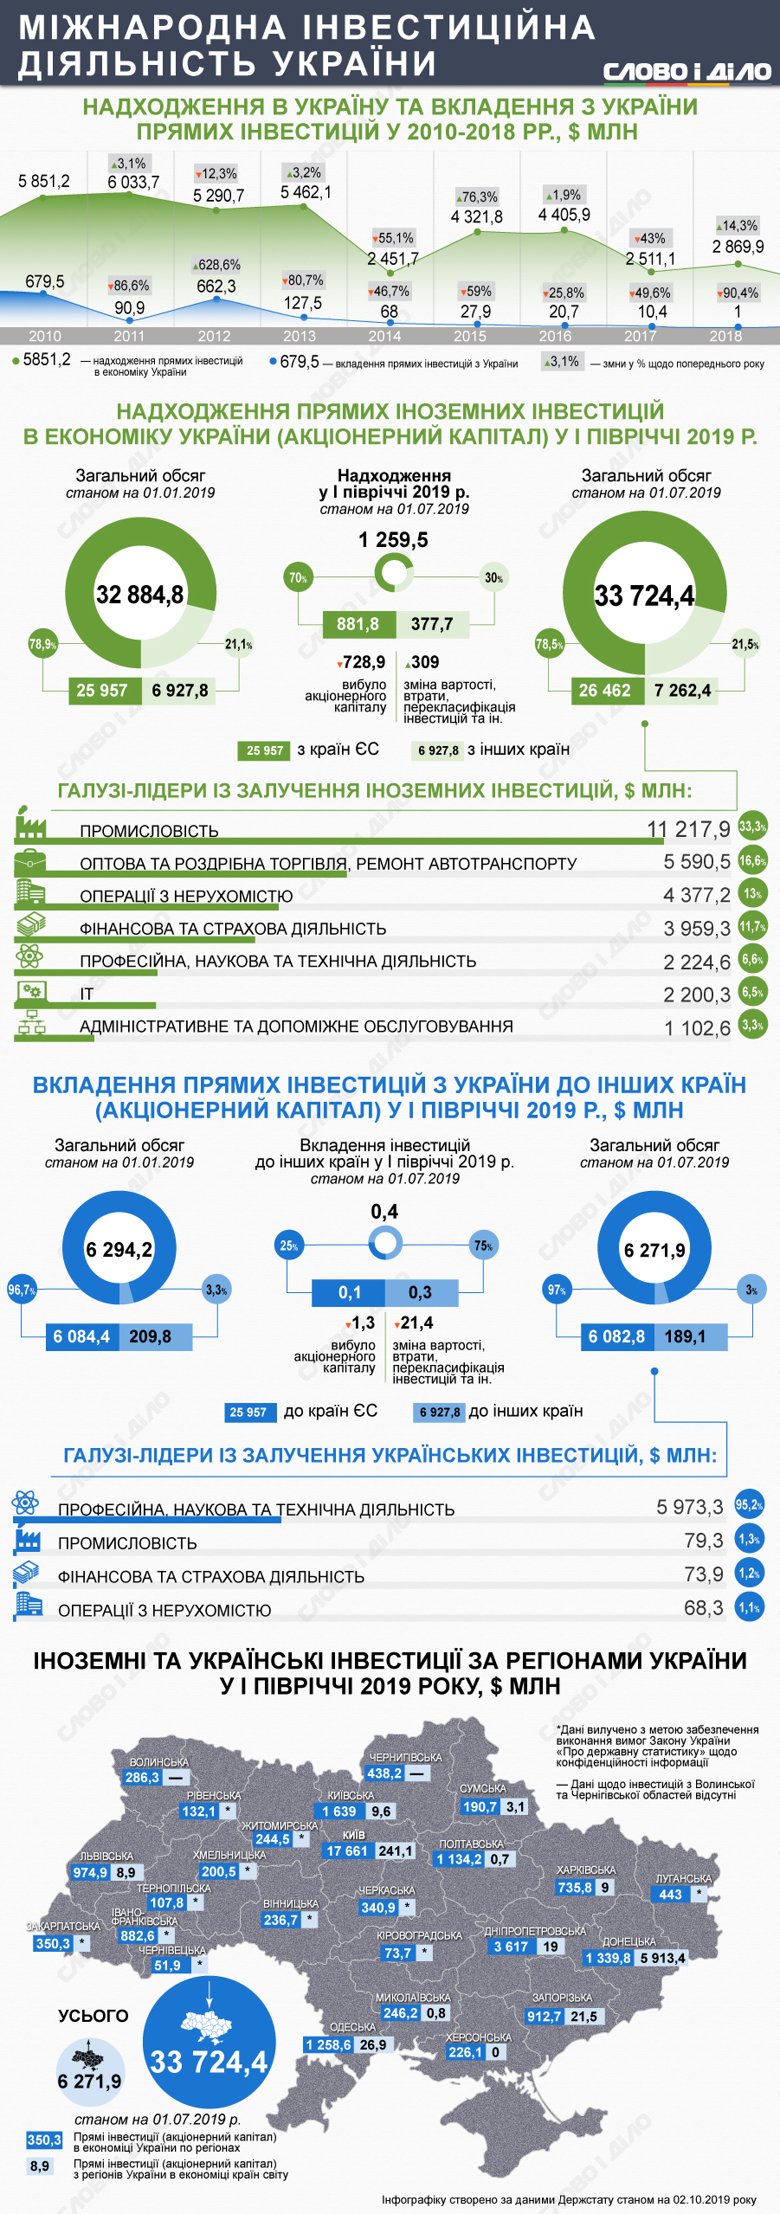 Из Донецкой области за границу в качестве акционерного капитала было вывезено 5 млрд 913 млн долларов прямых инвестиций за первое полугодие 2019 года, тогда как из Киева – только 241 млн долларов.